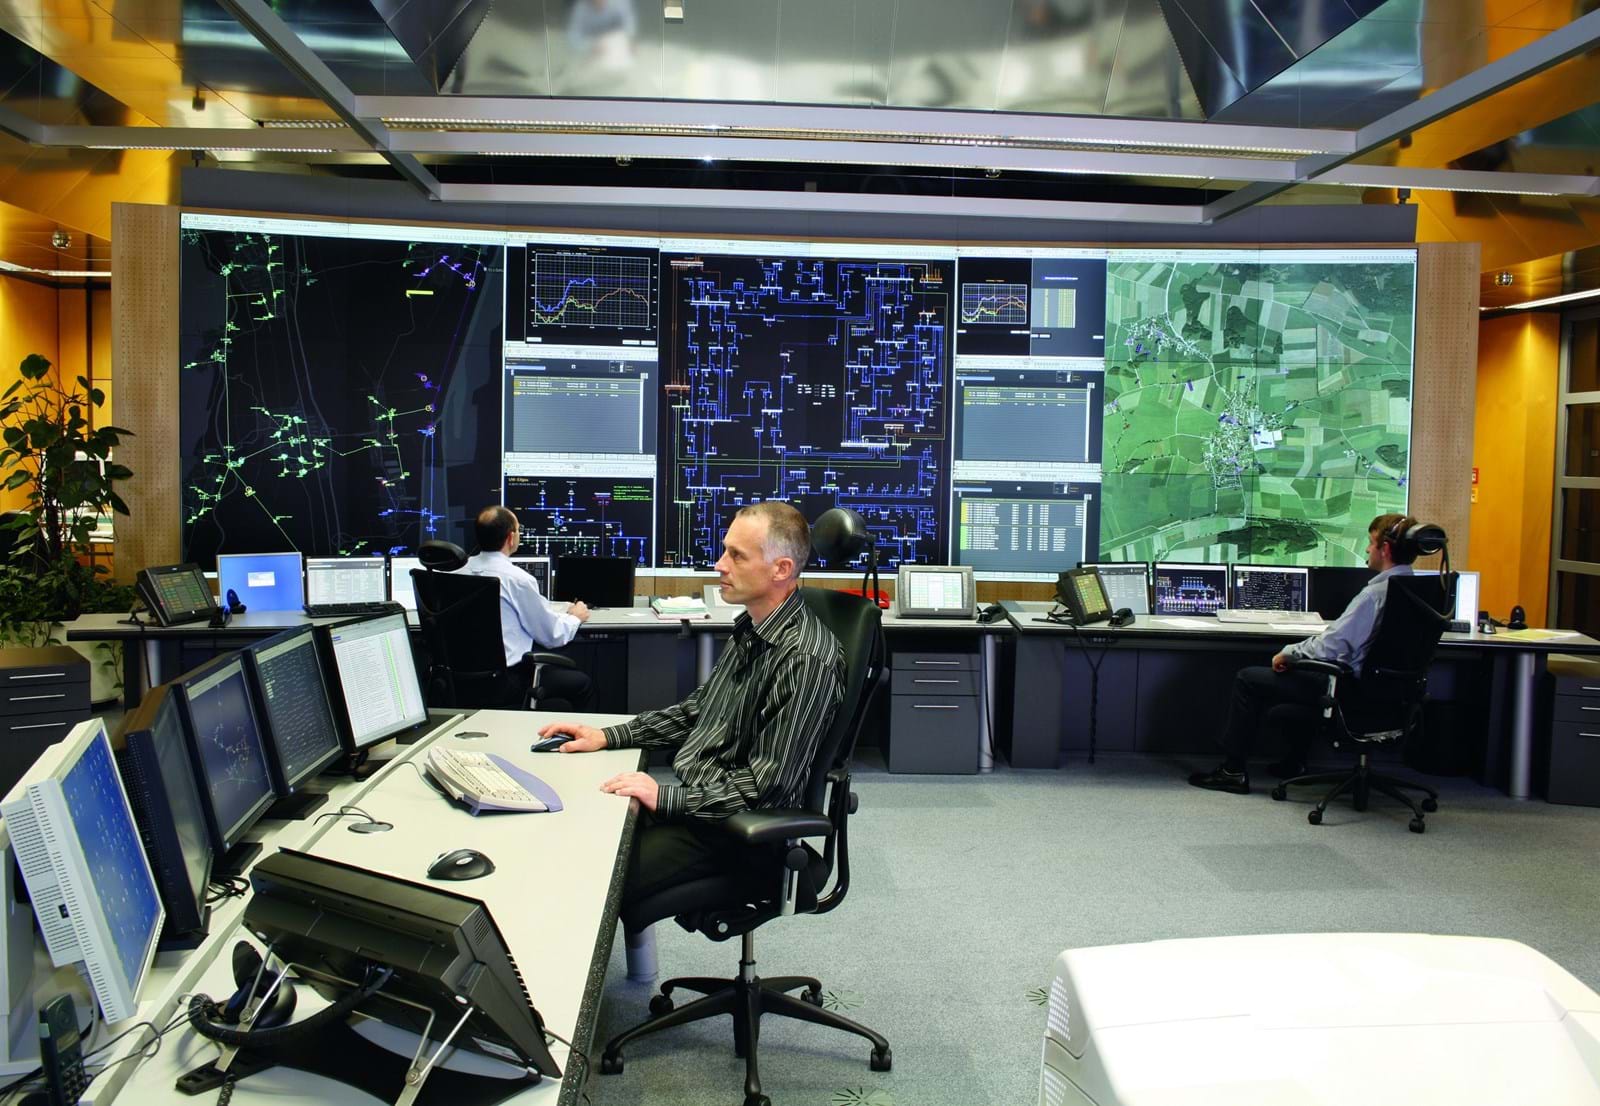 In der LEW-Netzleitstelle steuert und überwacht ein Team aus Ingenieuren rund um die Uhr das Leitungsnetz der Lechwerke.